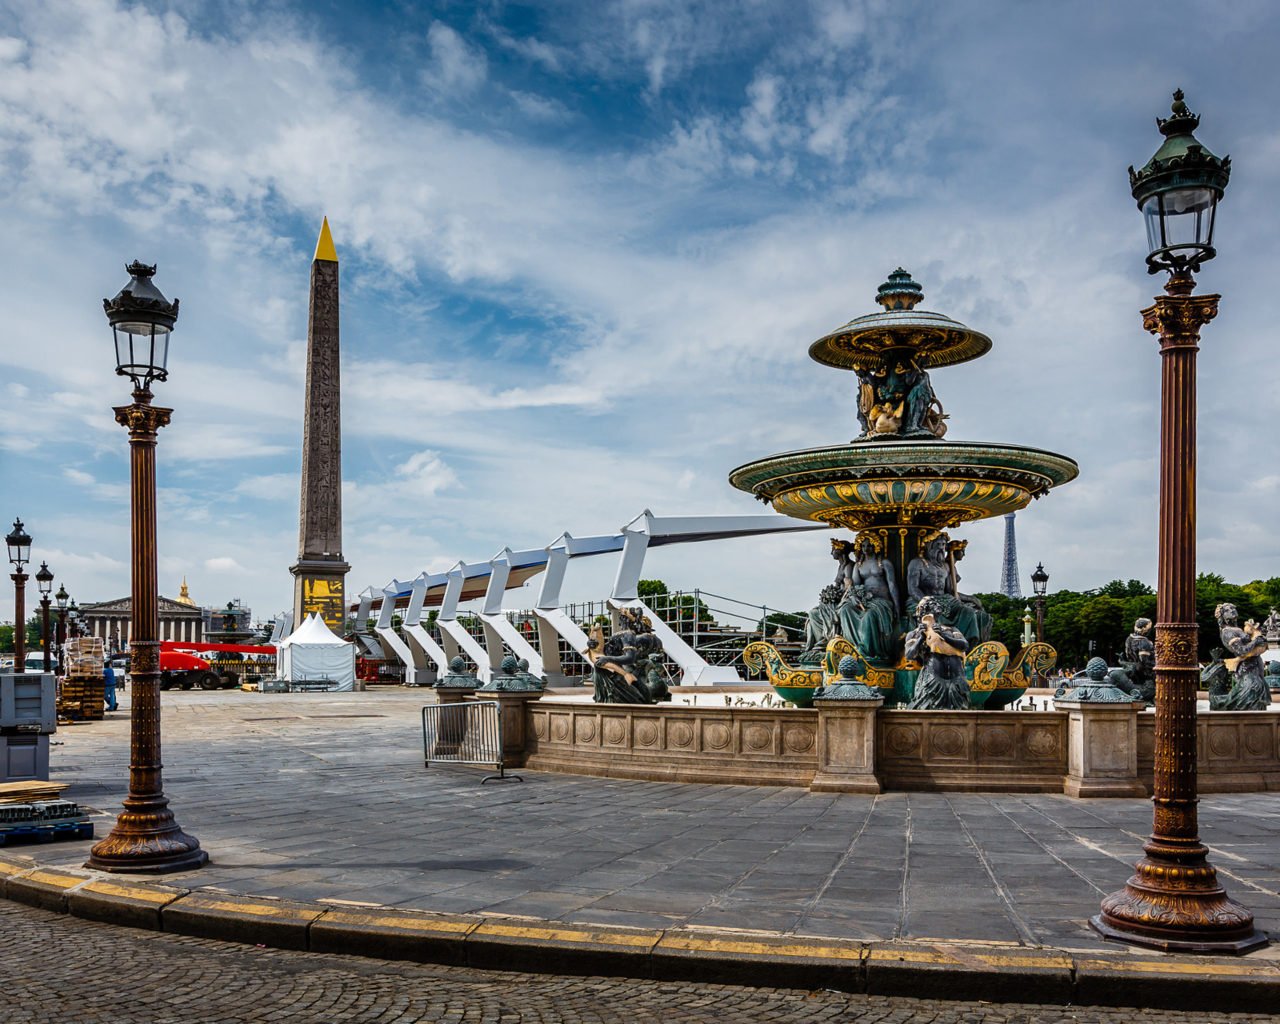 تصویر میدان کنکورد یا Place De La Concorde کشور فرانسه